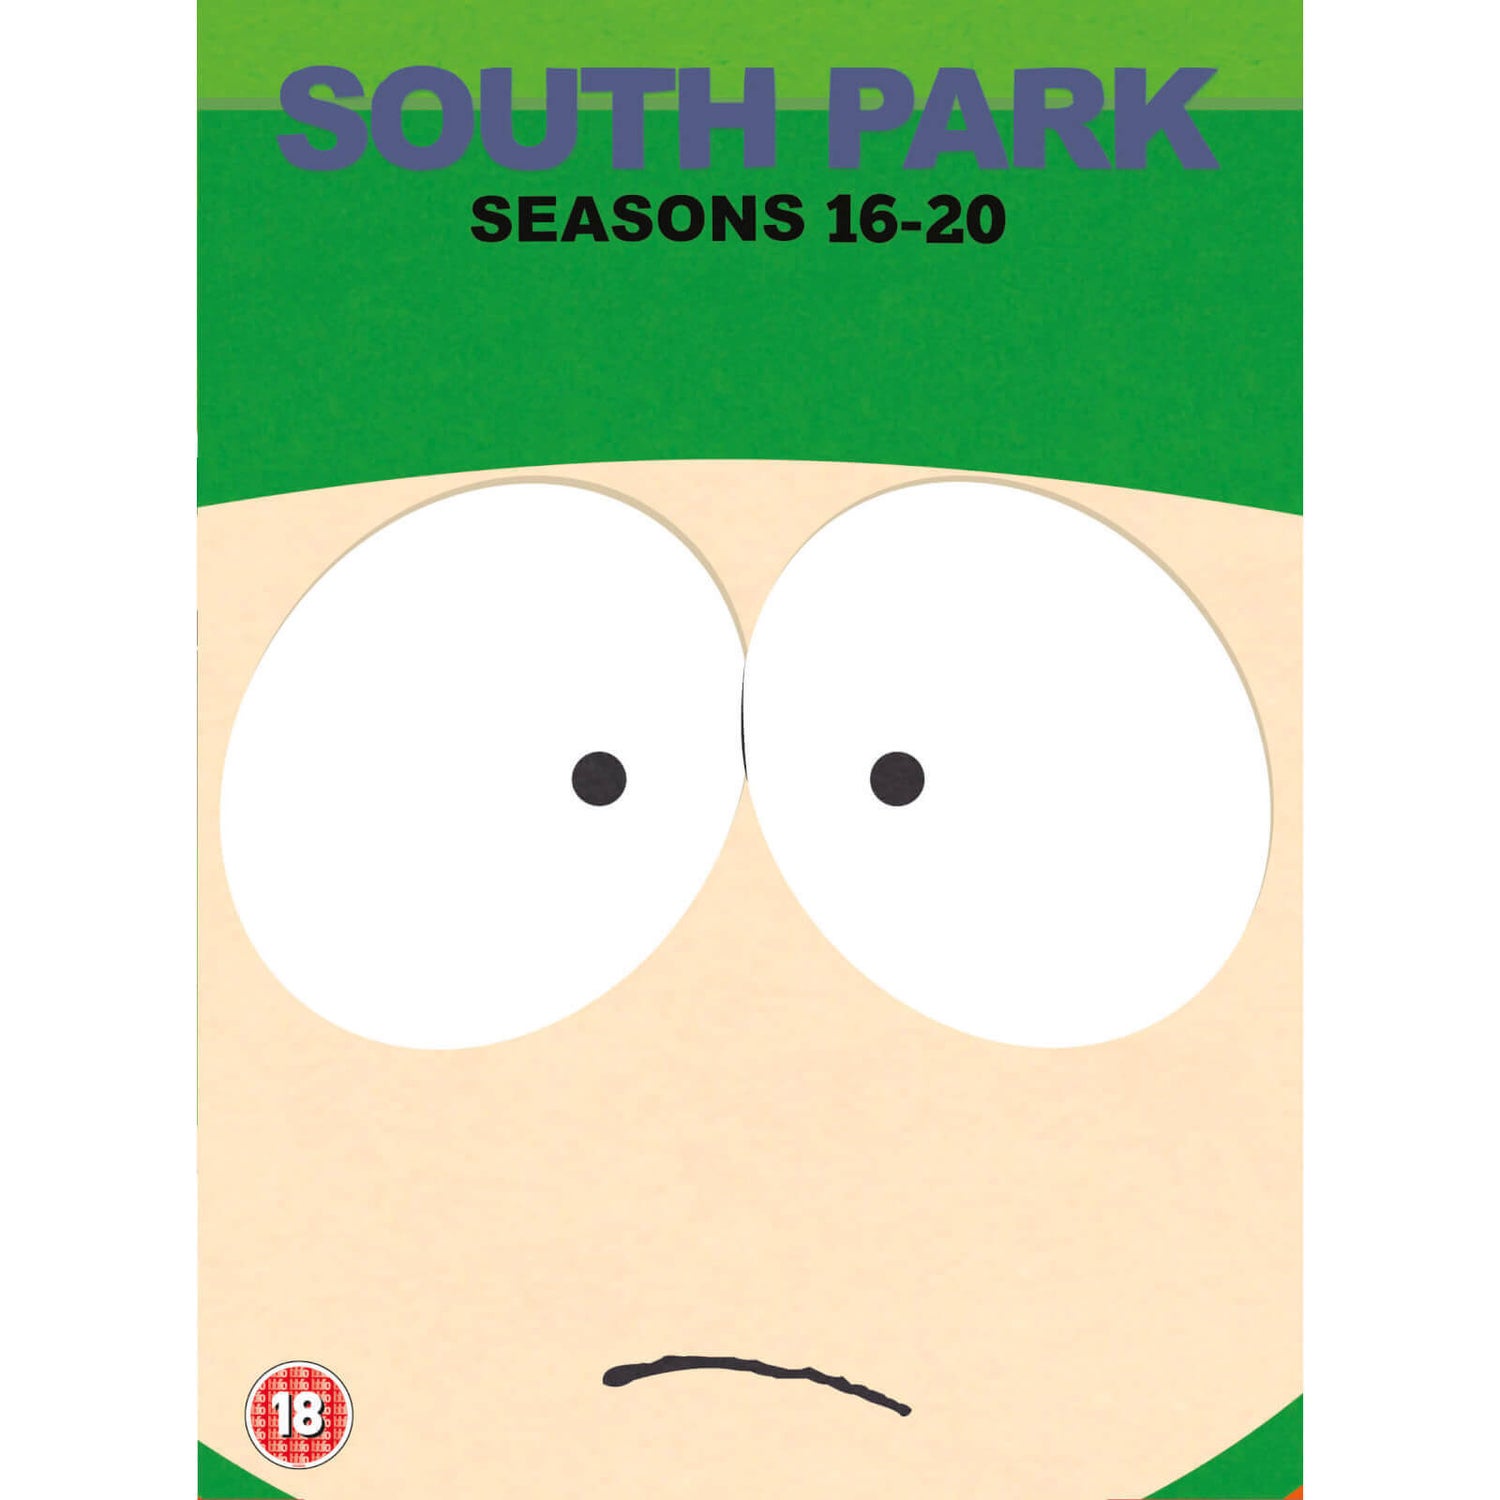 South Park Seasons 1620 Collection DVD Zavvi UK